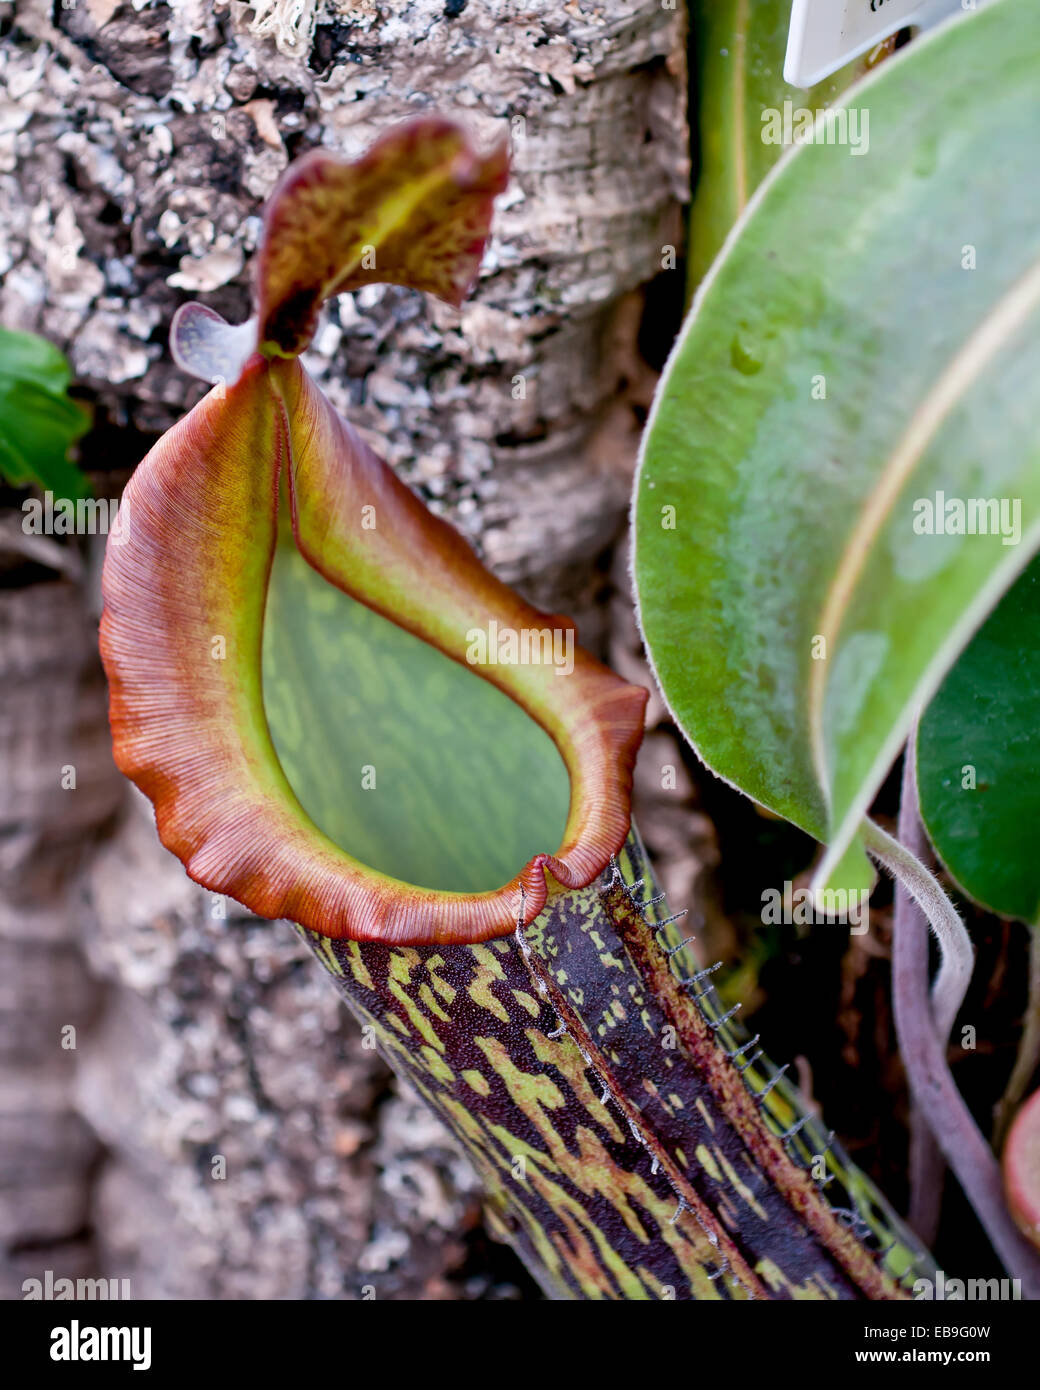 Nepenthes Rajah, der riesige Fleischfressende Kannenpflanze von Mt. Kinabalu, Sabah.  Detail von der Mündung des Kruges. Stockfoto